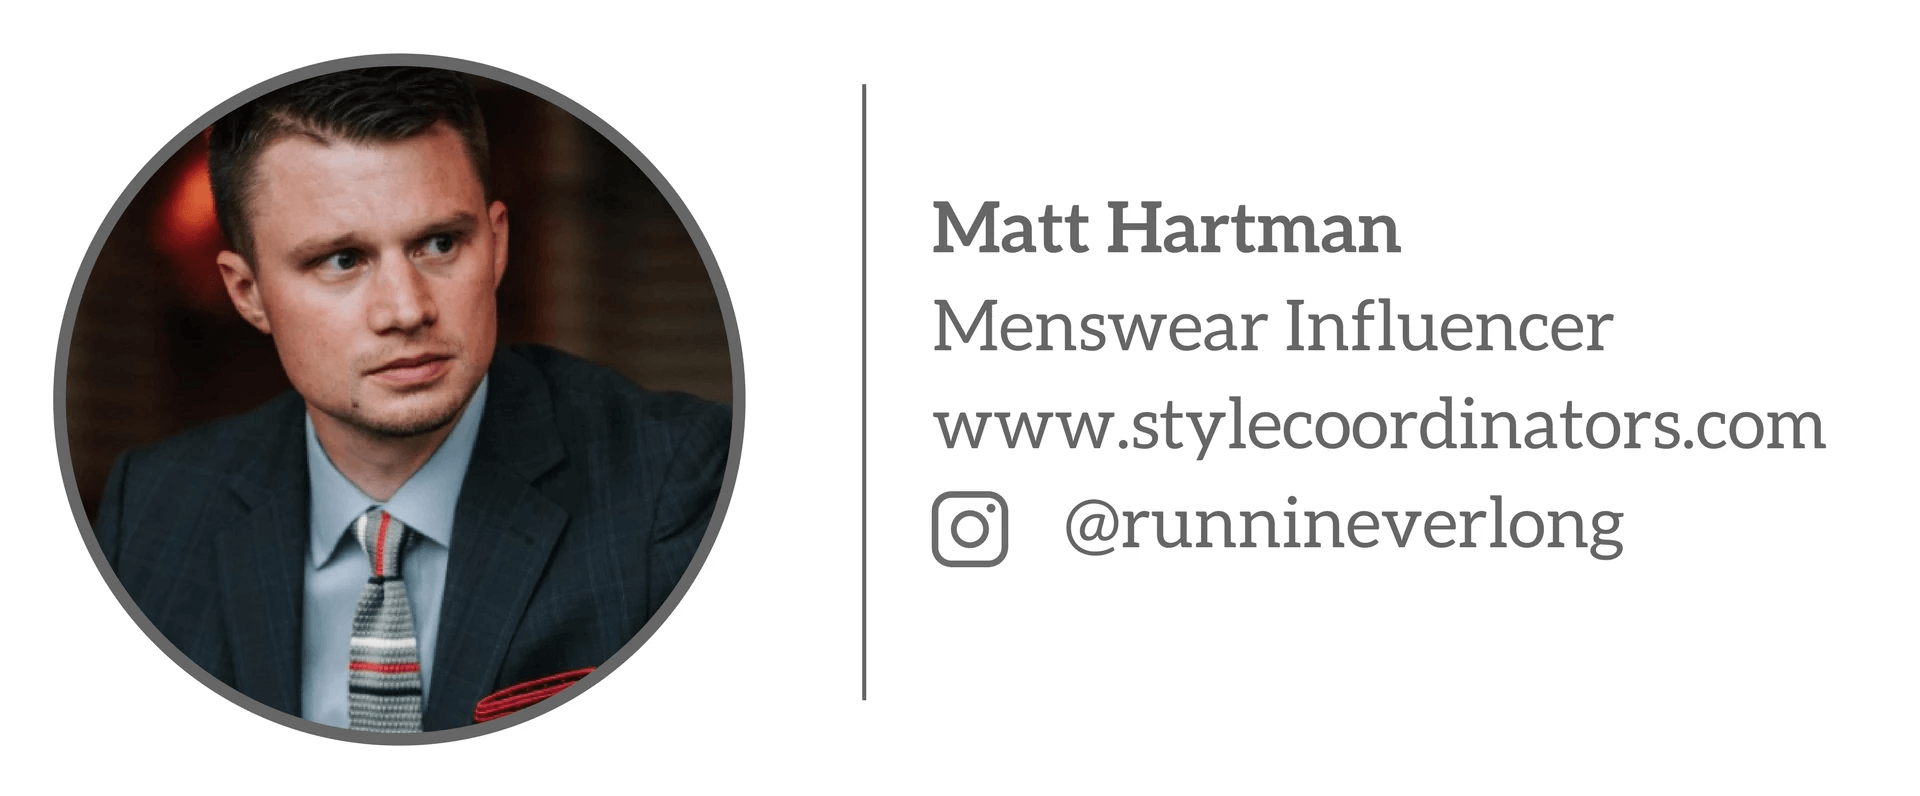 Matt Hartman - Menswear Influencer “3 điều bạn cần chỉn chu trước khi ra khỏi nhà”